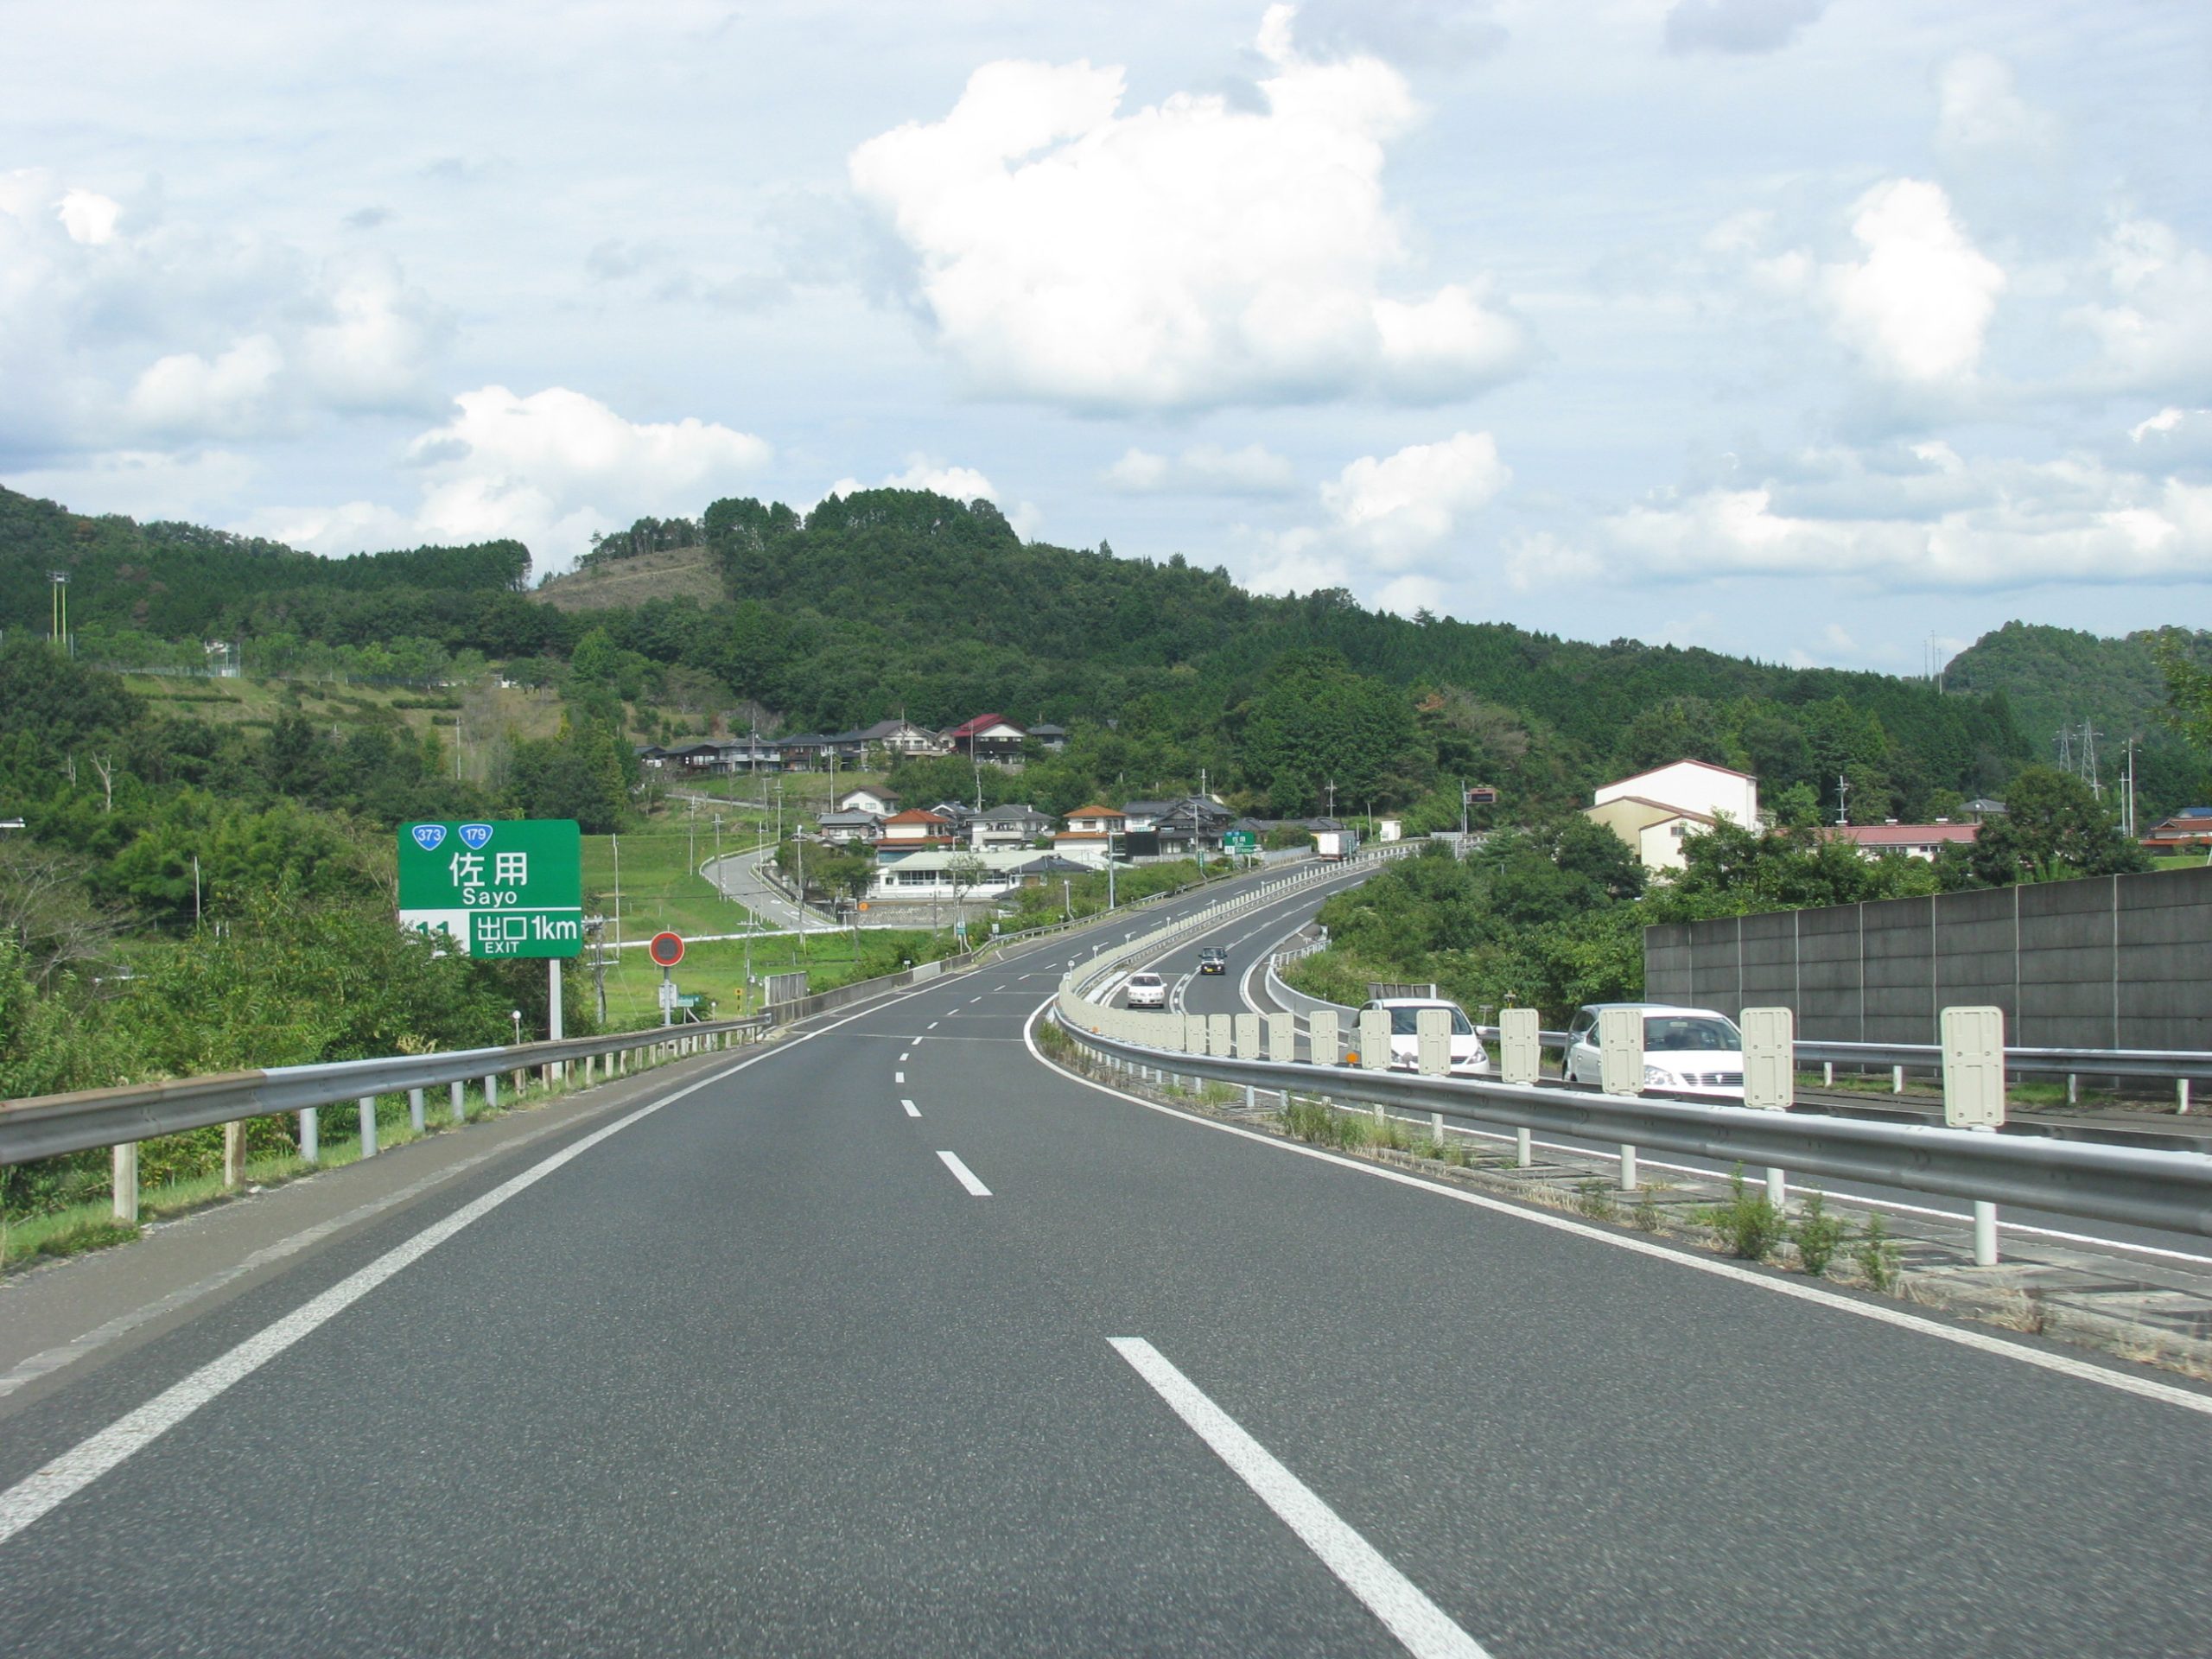 автомагистраль Asian Highway 4